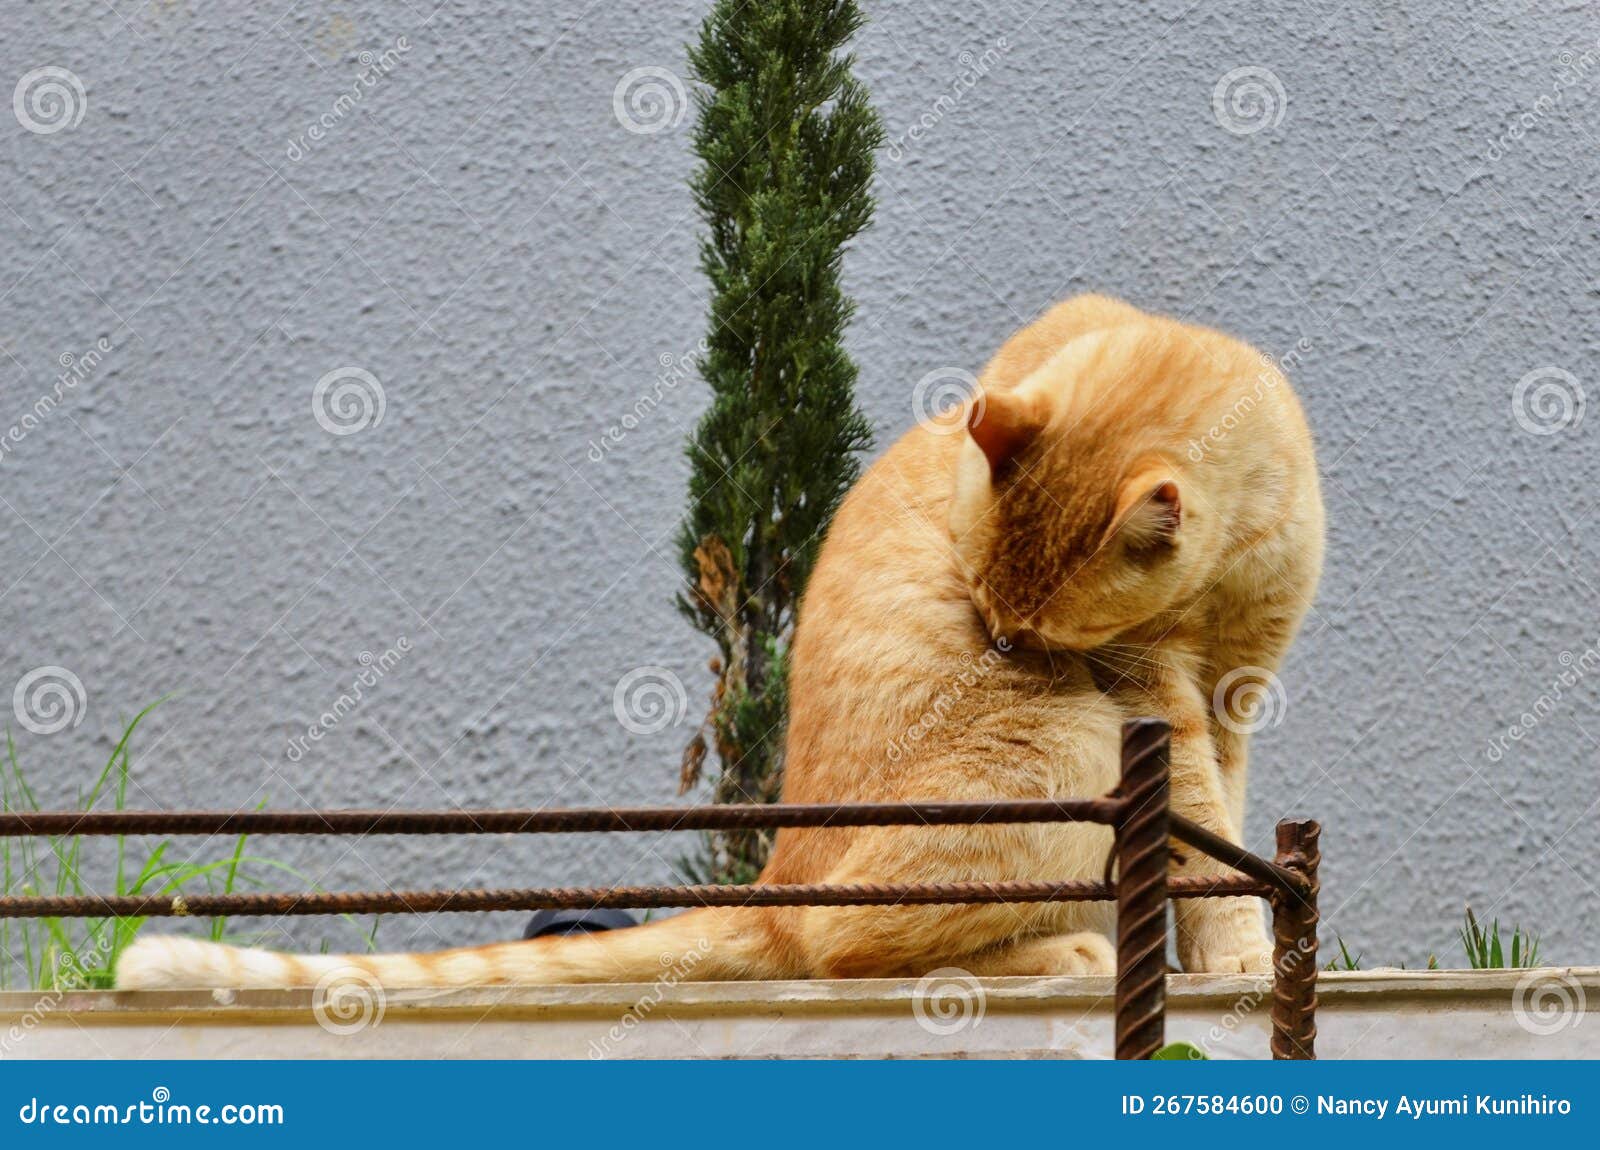 an orange felis catus licking its fur